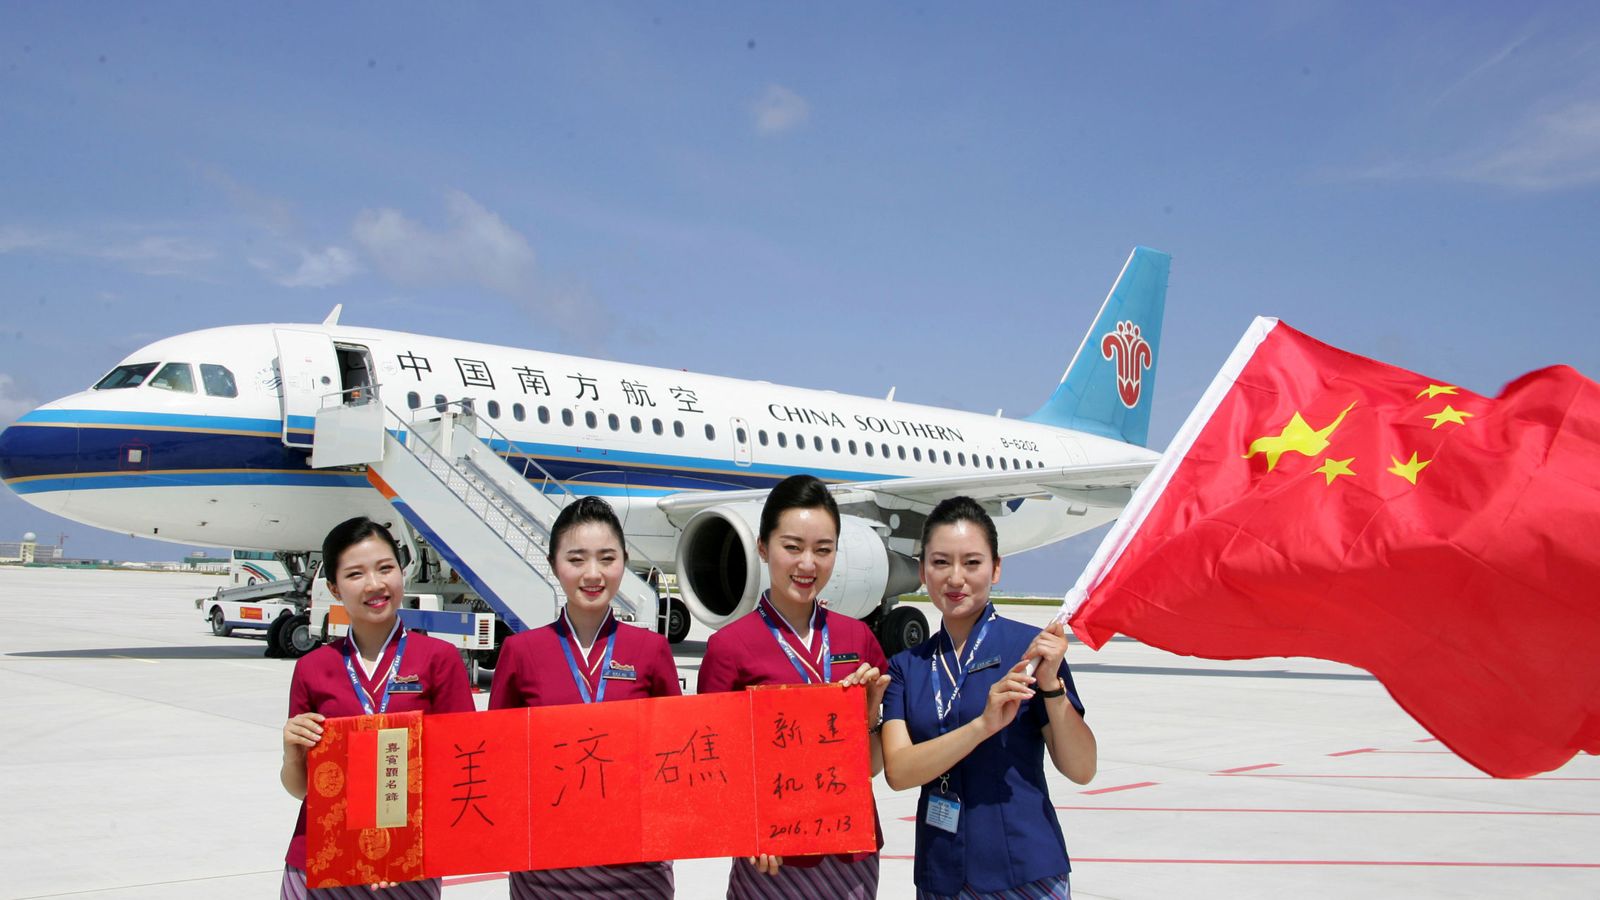 Foto: Tripulación del avión comercial chino enviado al nuevo aeropuerto construido en las Spratly, el 13 de julio de 2016 (Reuters)